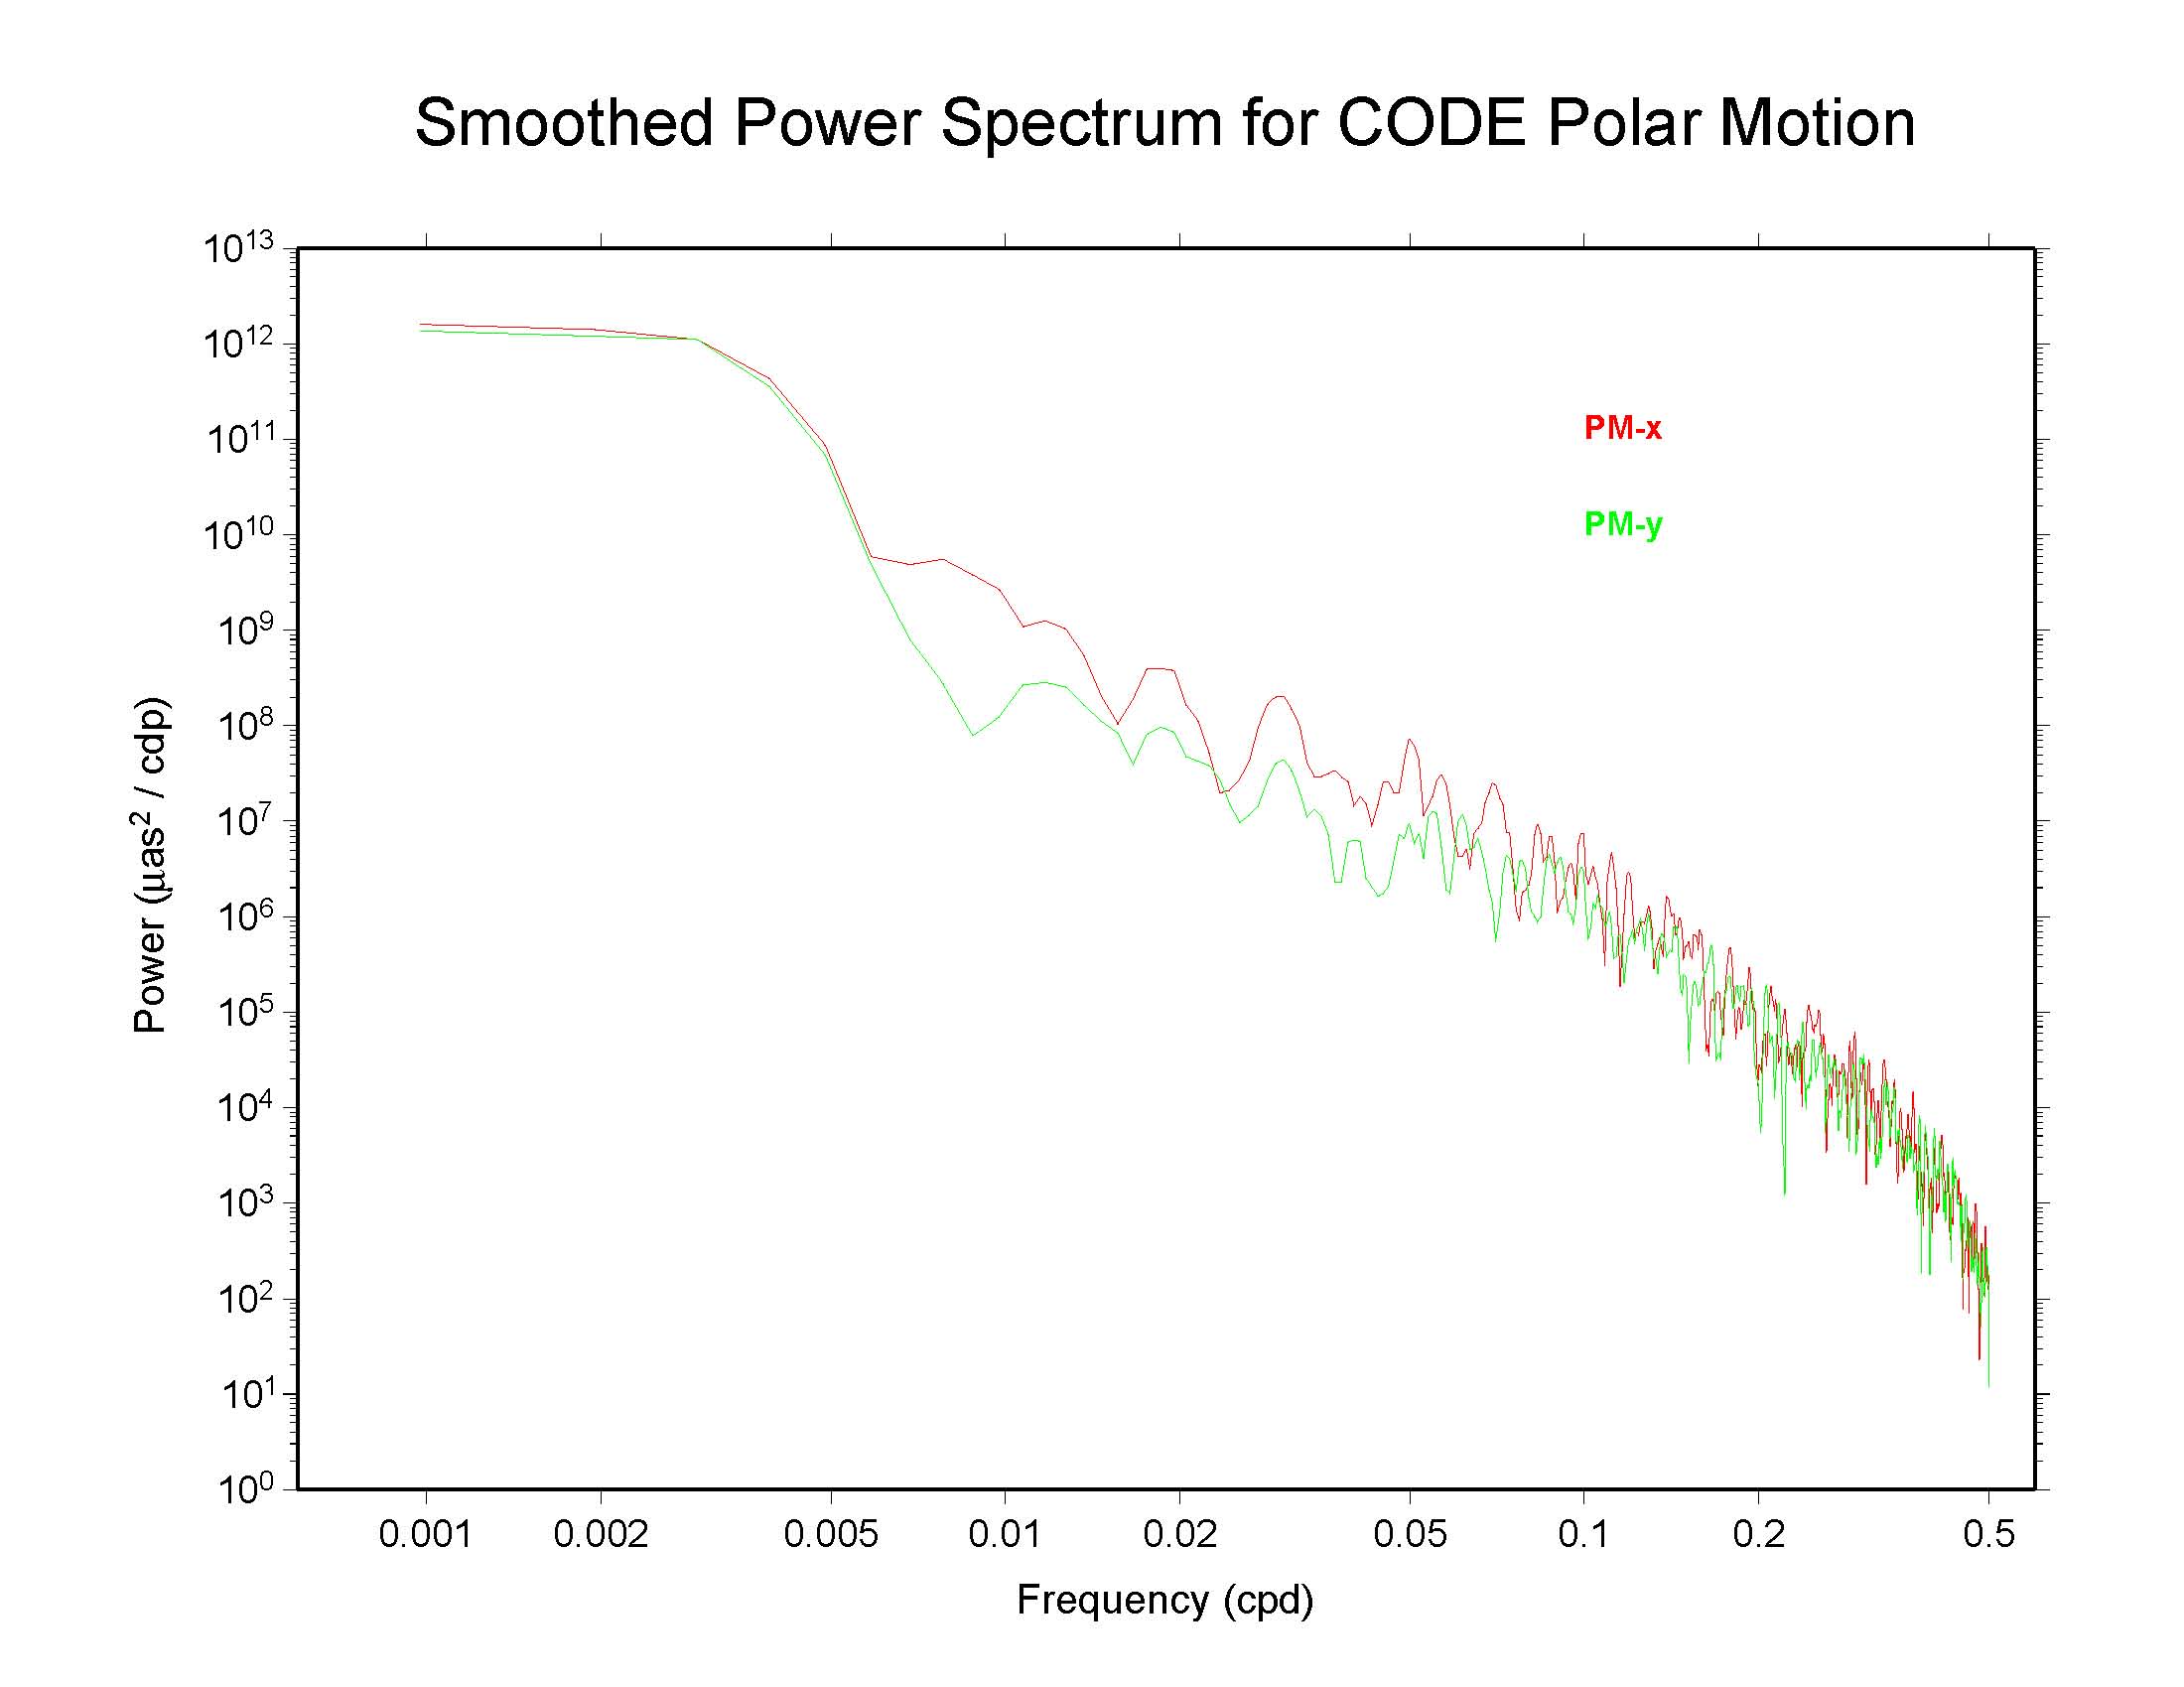 CODE polar motion spectra